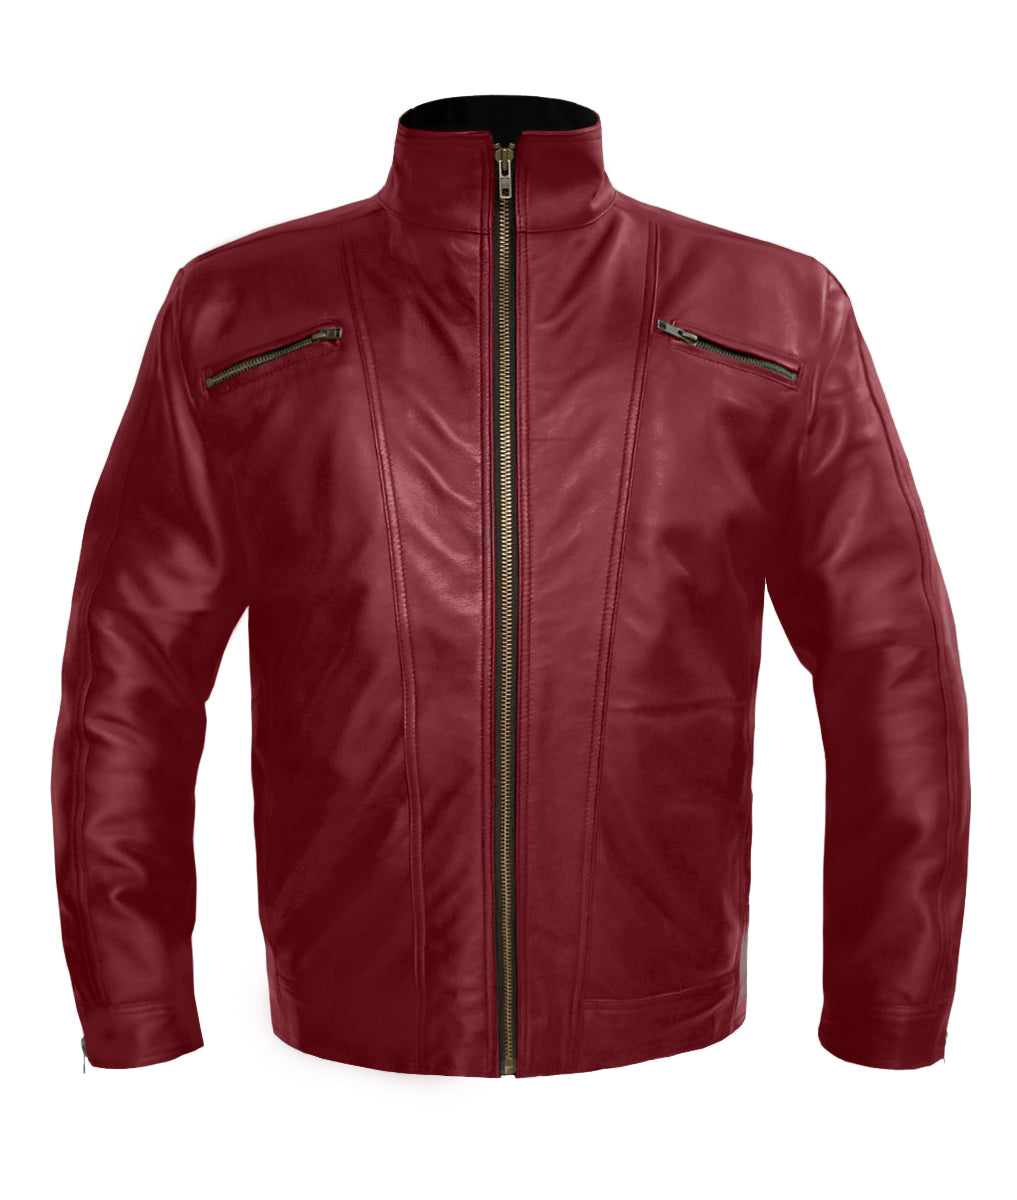 Men's Stylish Genuine Leather Motorbike Bomber Biker Vintage Style Jacket #530-LE